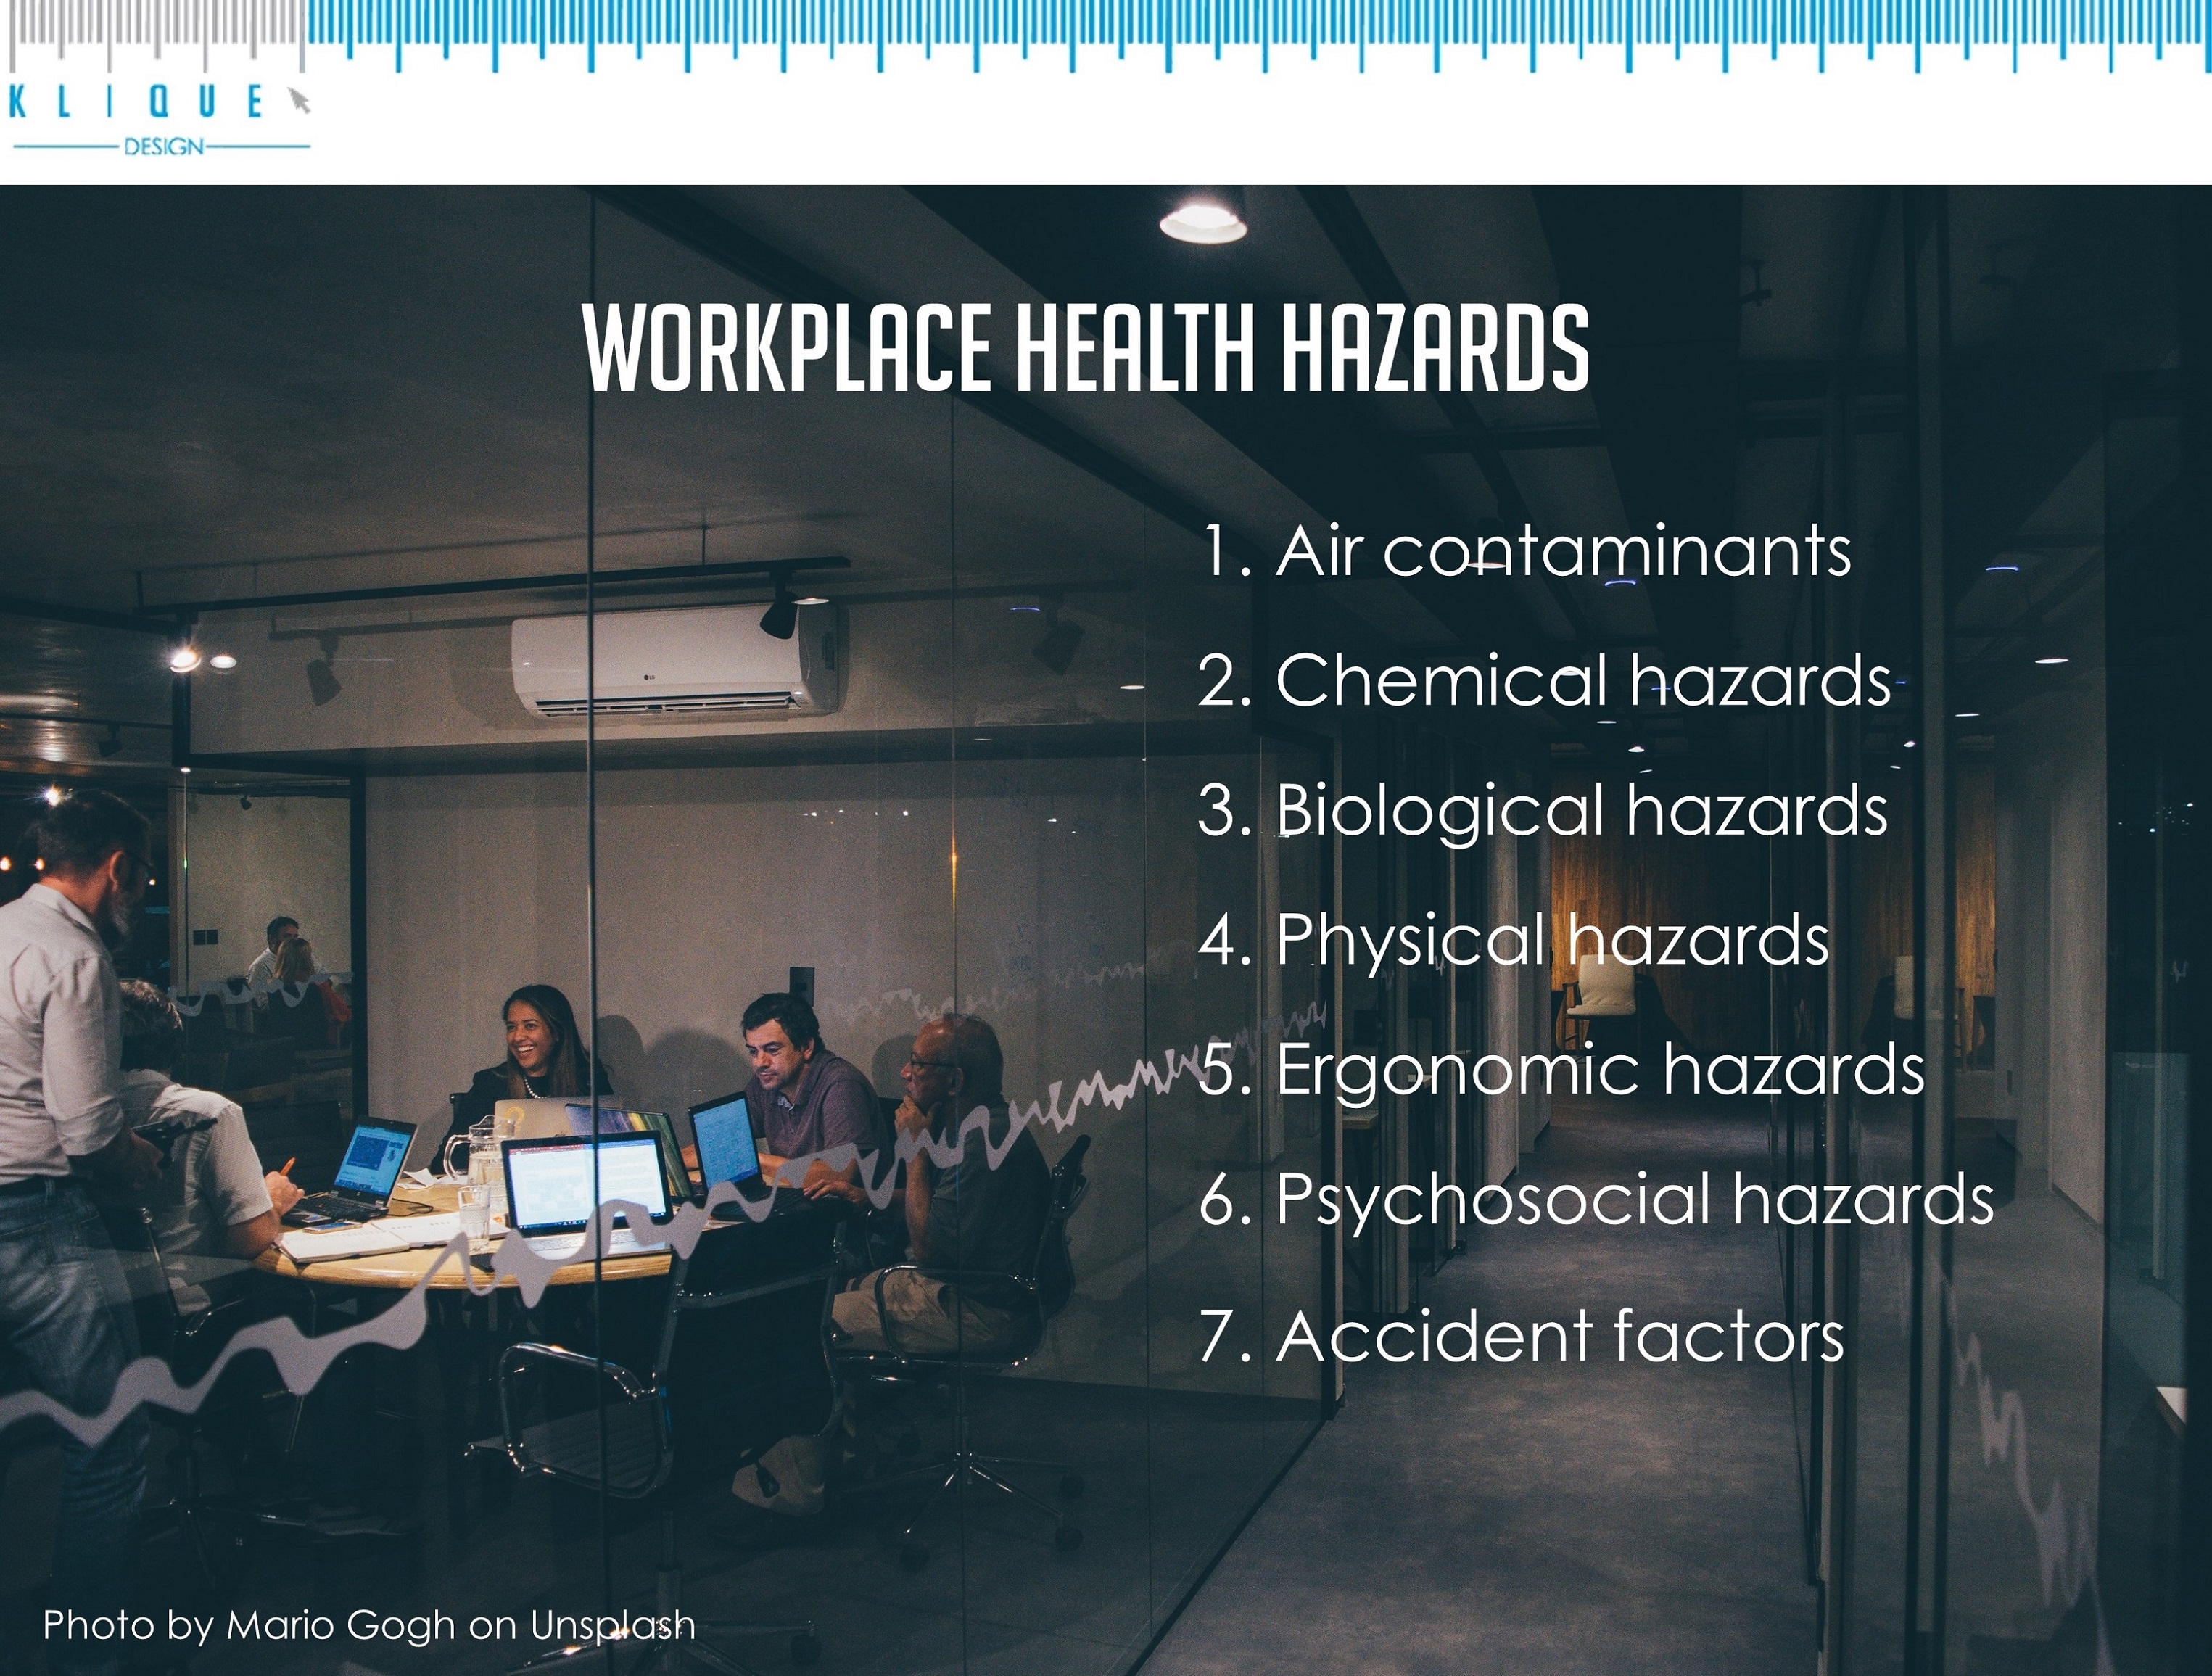 List of workplace health hazards